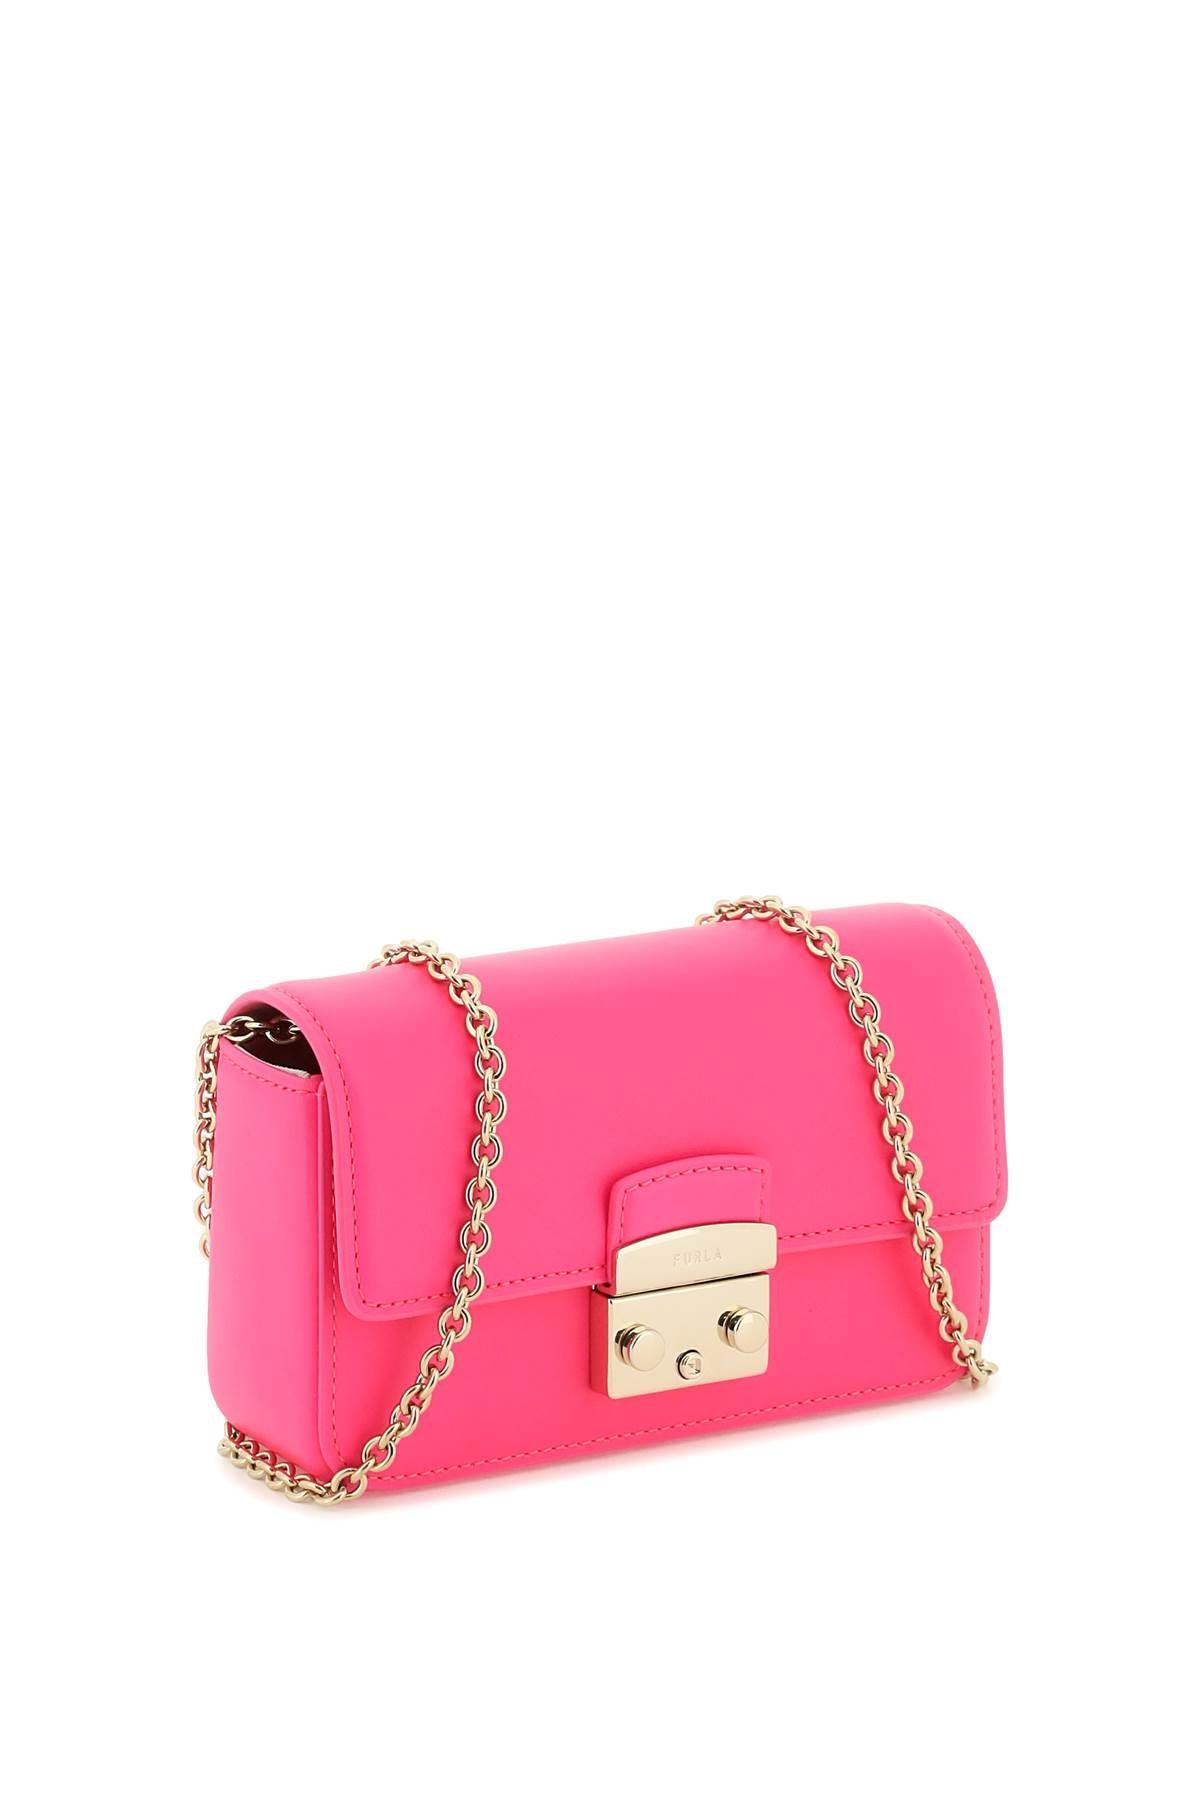 Furla Metropolis Mini Crossbody Bag in Pink | Lyst